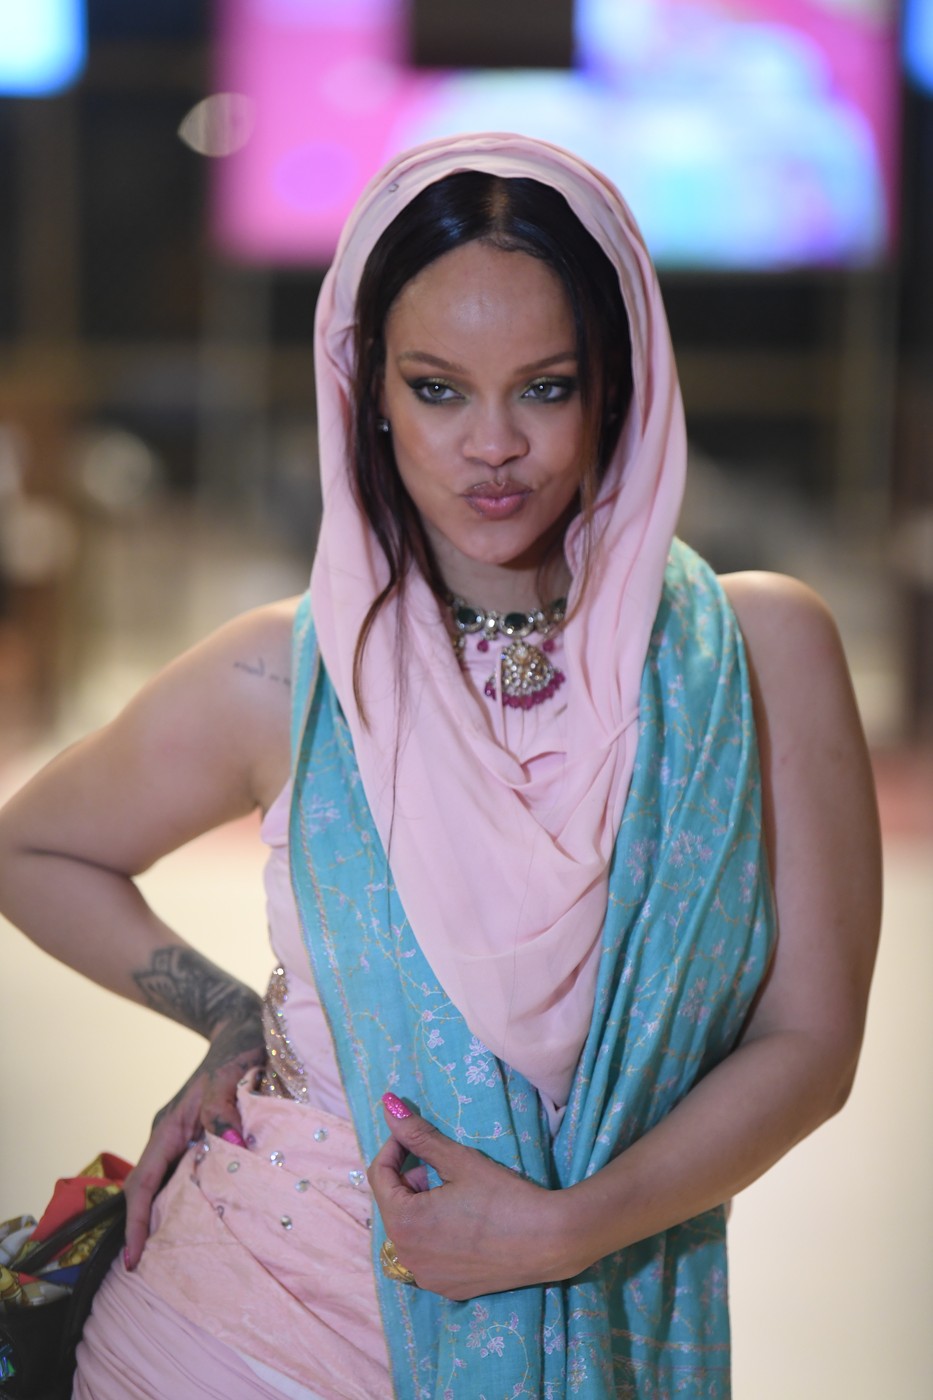 Rihanna a fost criticată pentru performanța ei / Profimedia Images